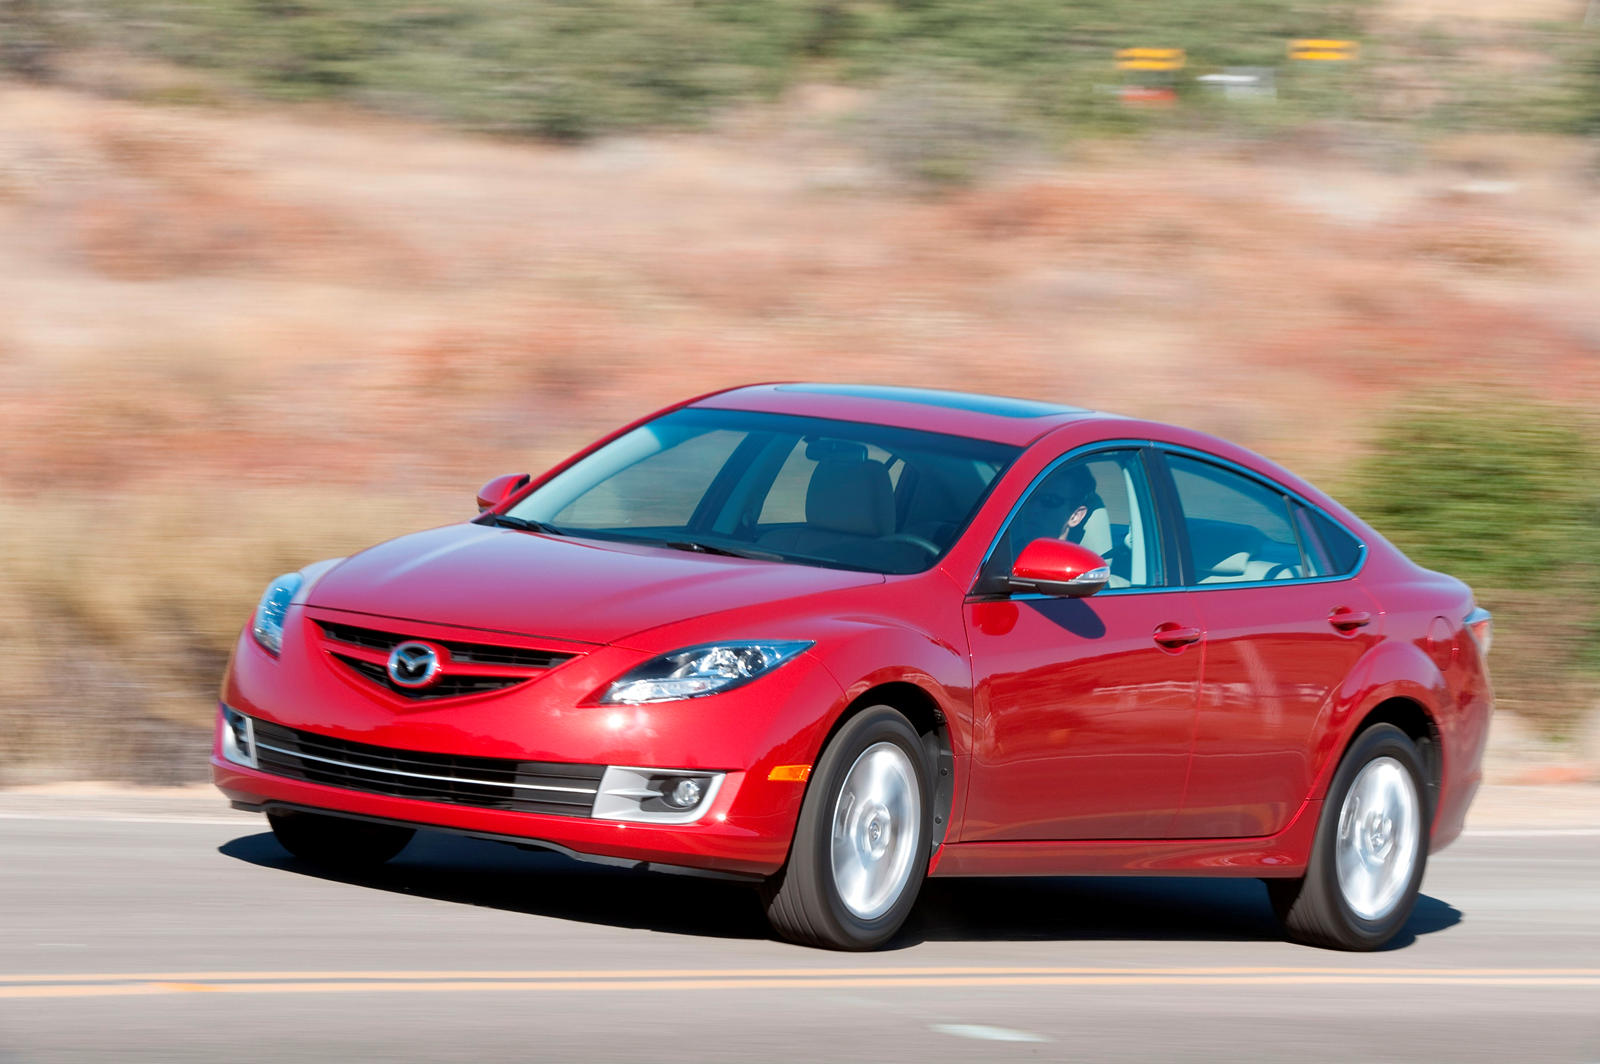 2011 Mazda 6 Sedan: Review, Trims, Specs, Price, New Interior Features